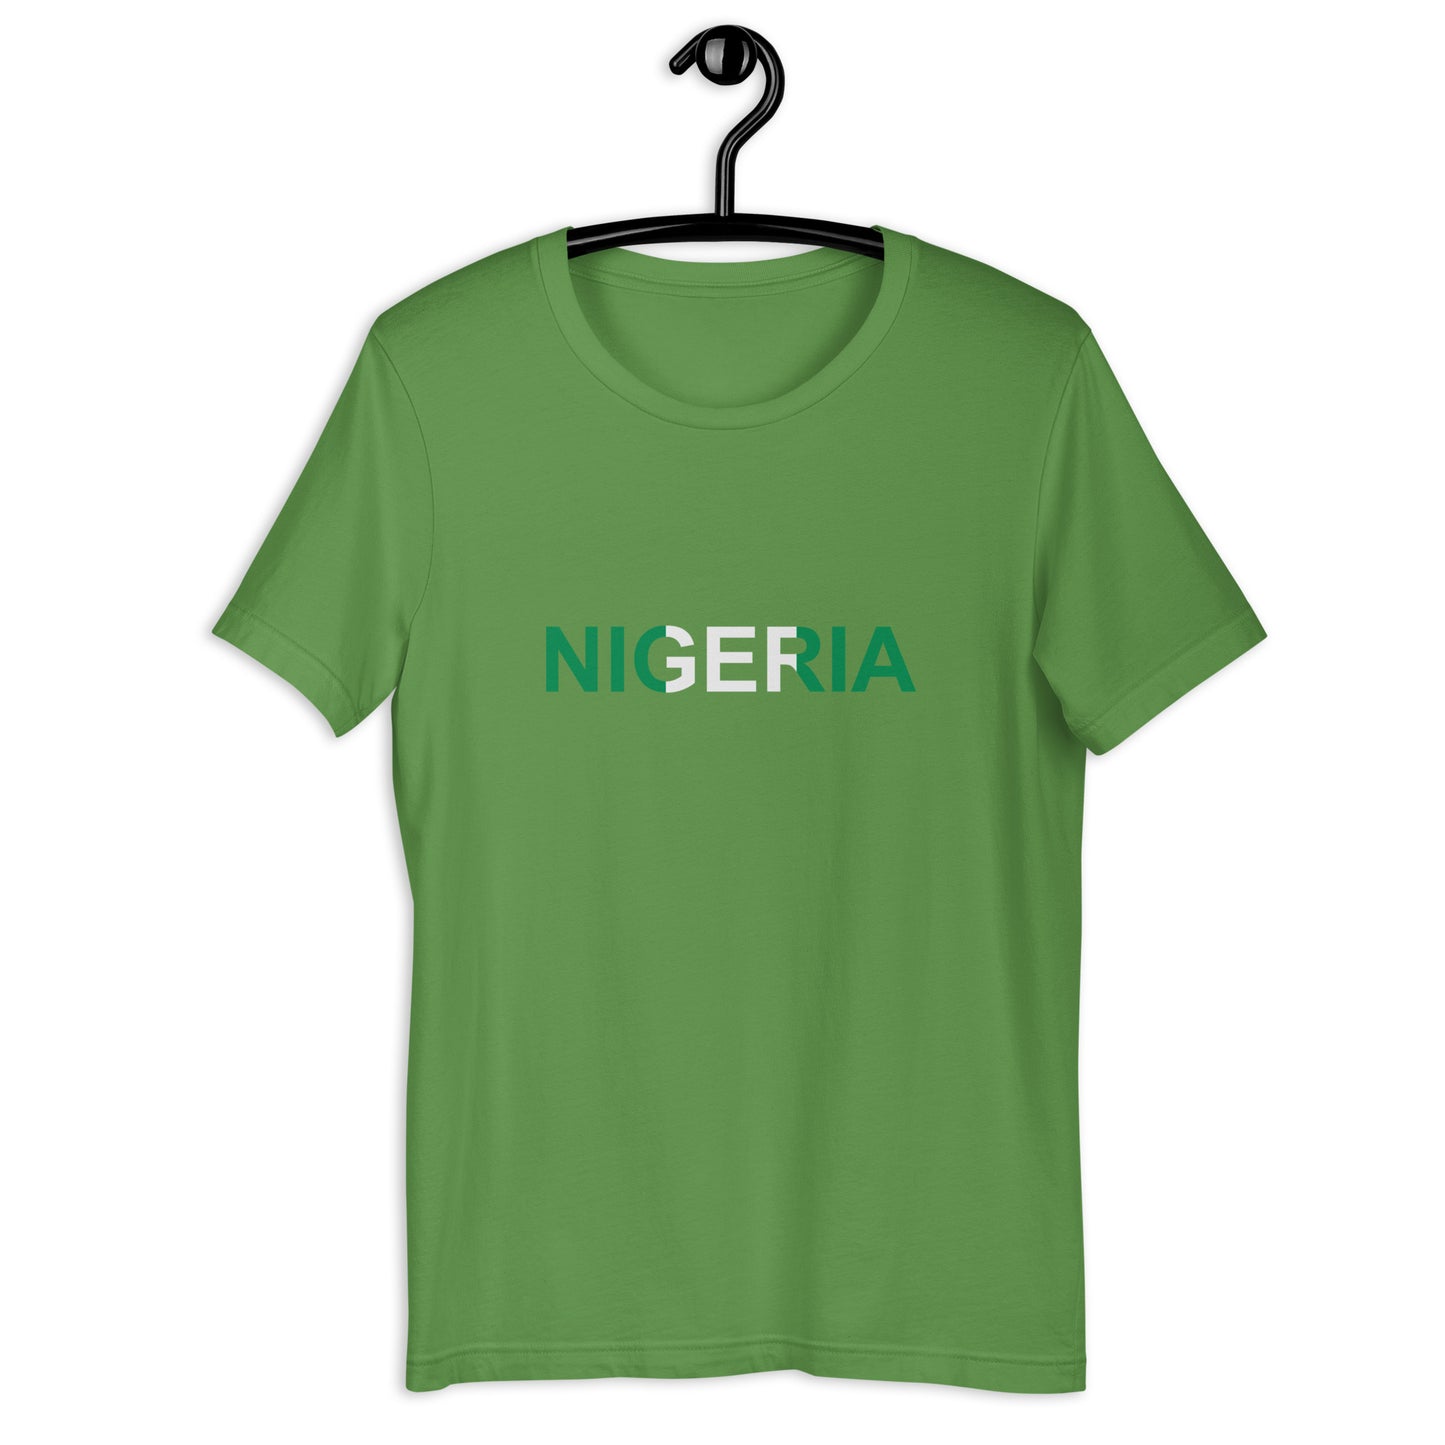 Nigeria Unisex t-shirt